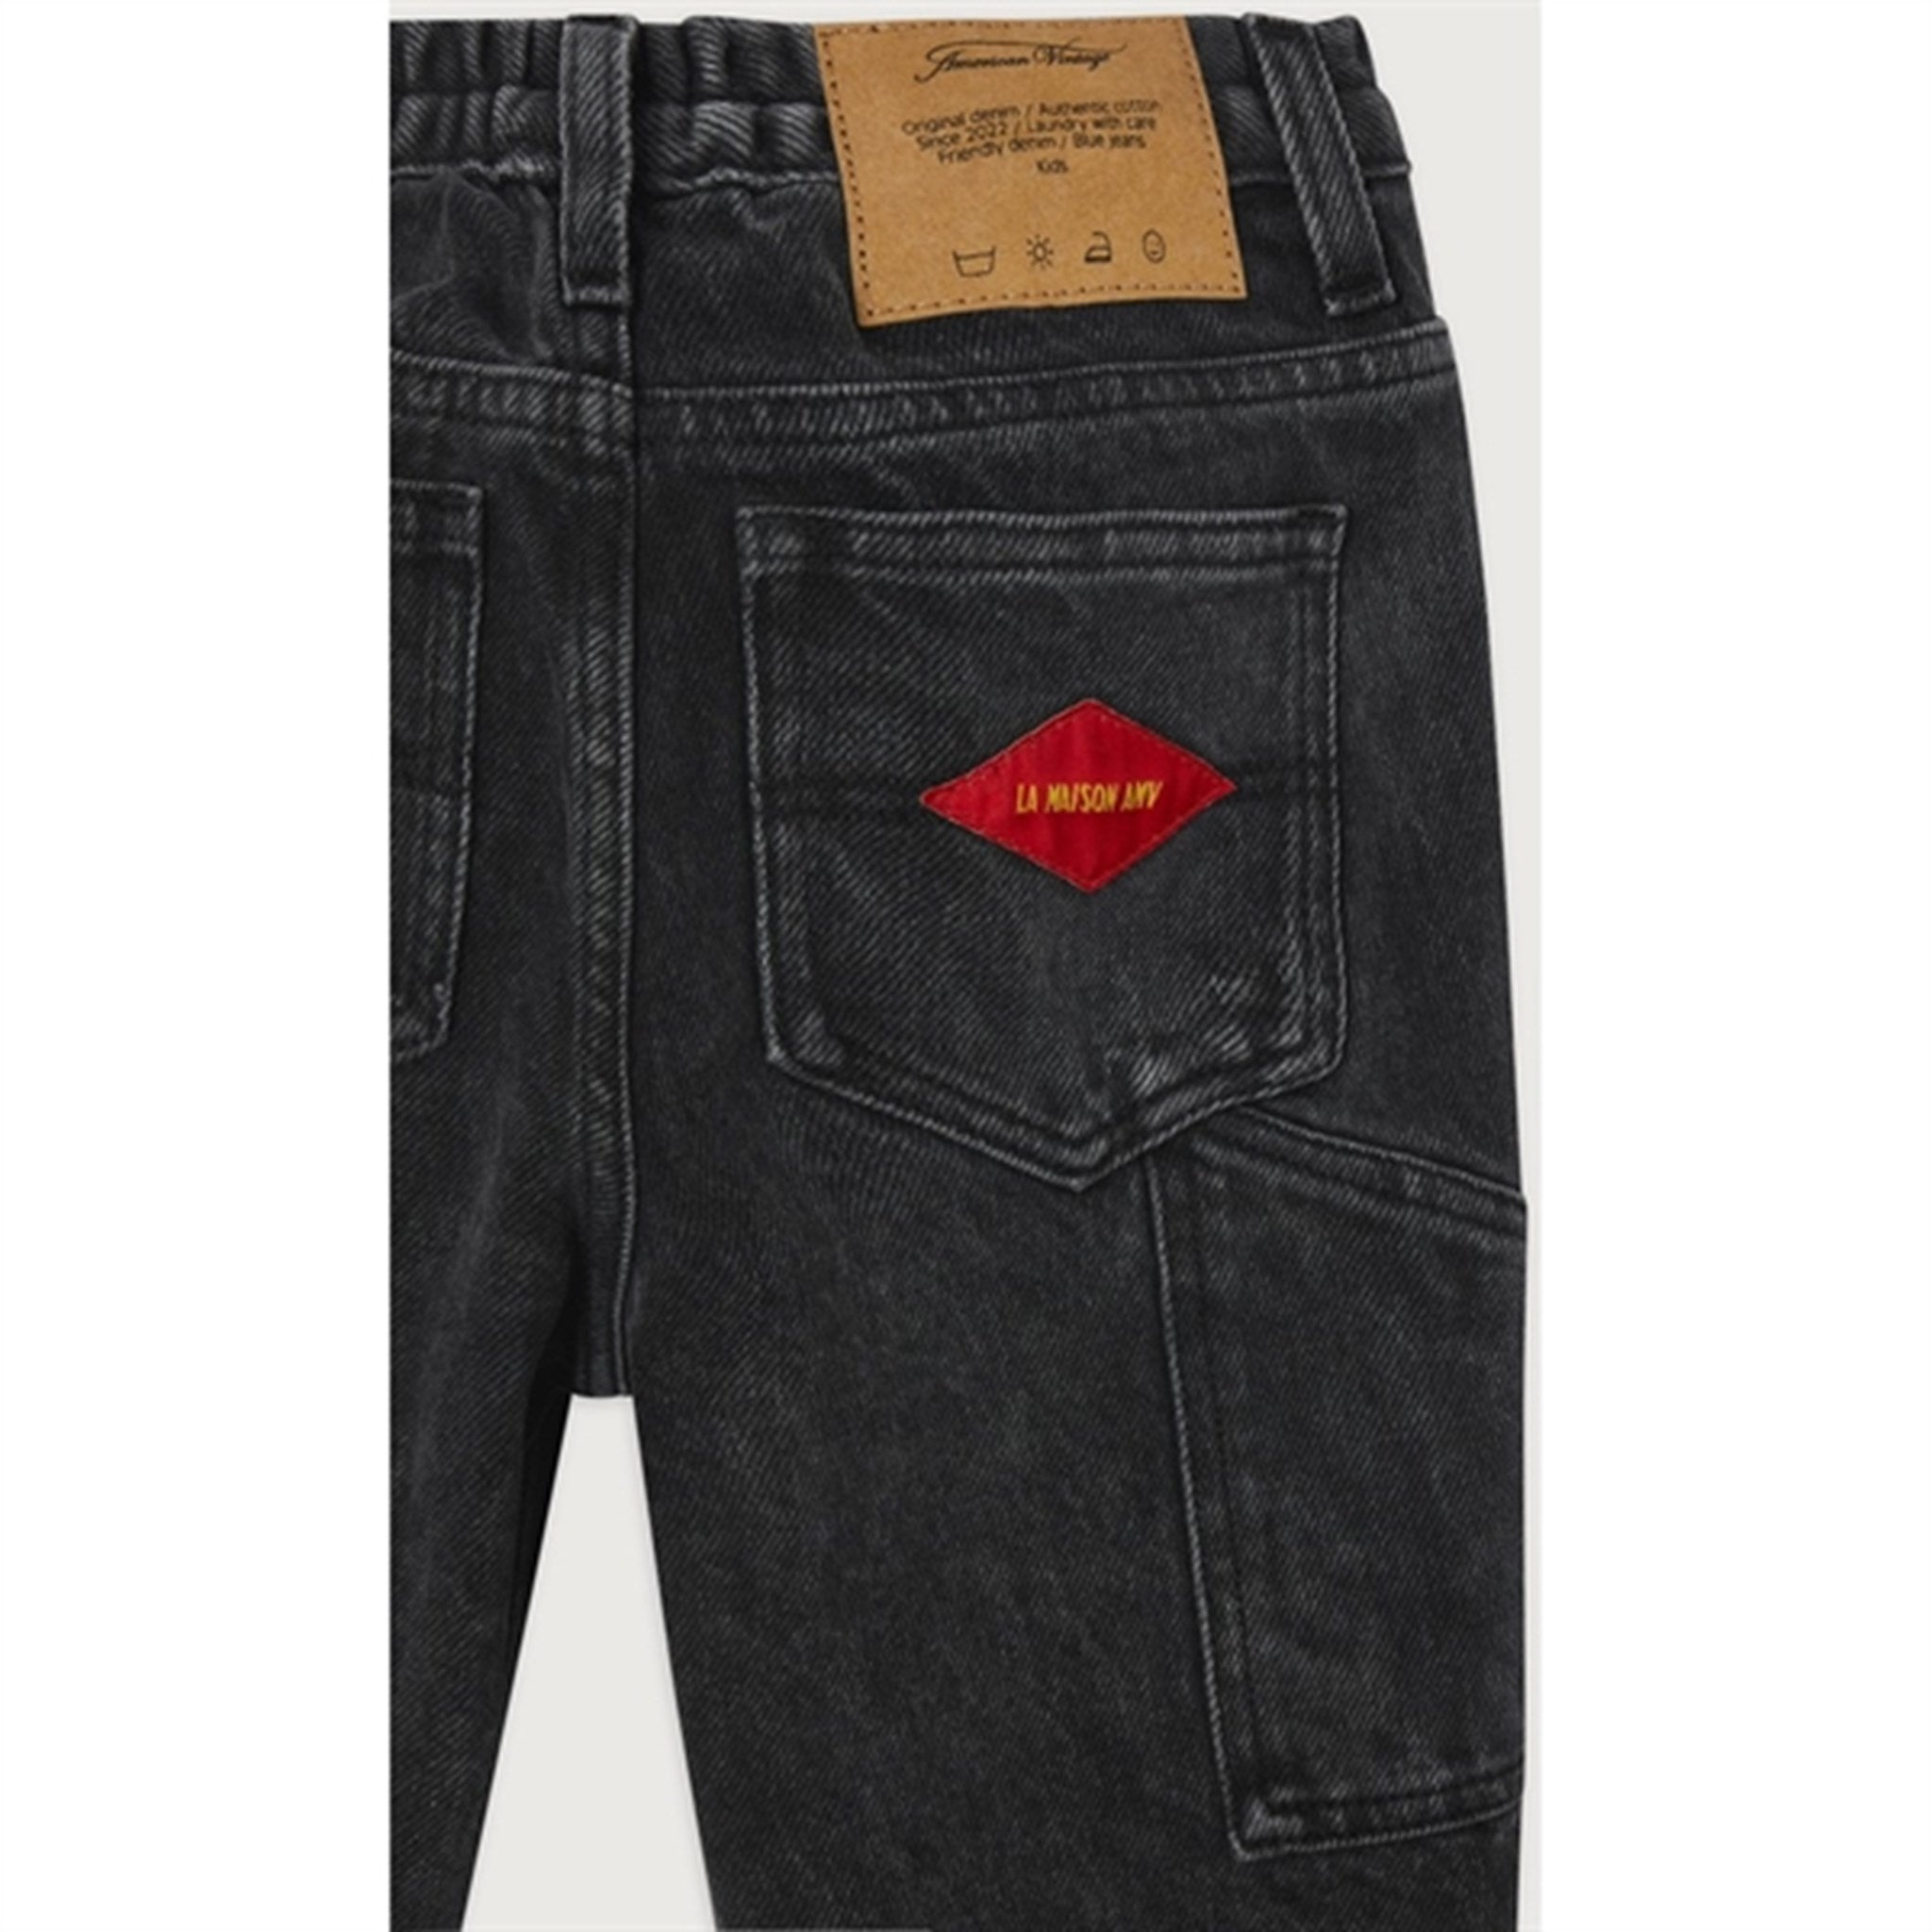 American Vintage Worker Jeans Yopday Black 2